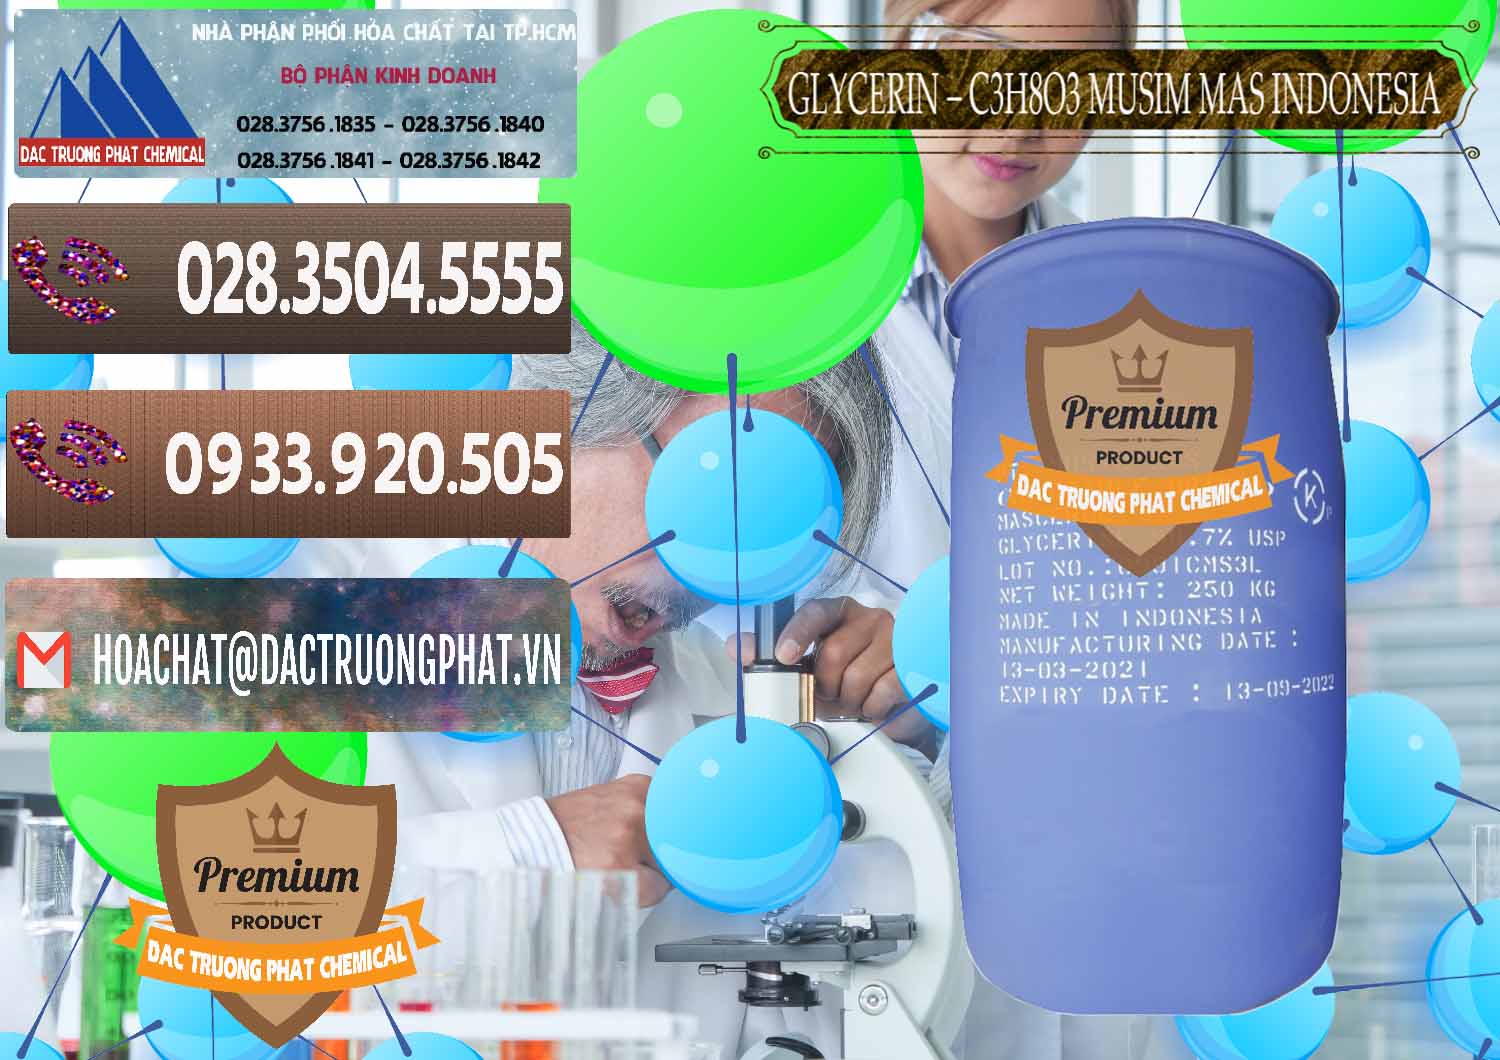 Nơi chuyên cung ứng ( bán ) Glycerin – C3H8O3 99.7% Musim Mas Indonesia - 0272 - Công ty kinh doanh ( cung cấp ) hóa chất tại TP.HCM - hoachatviet.net